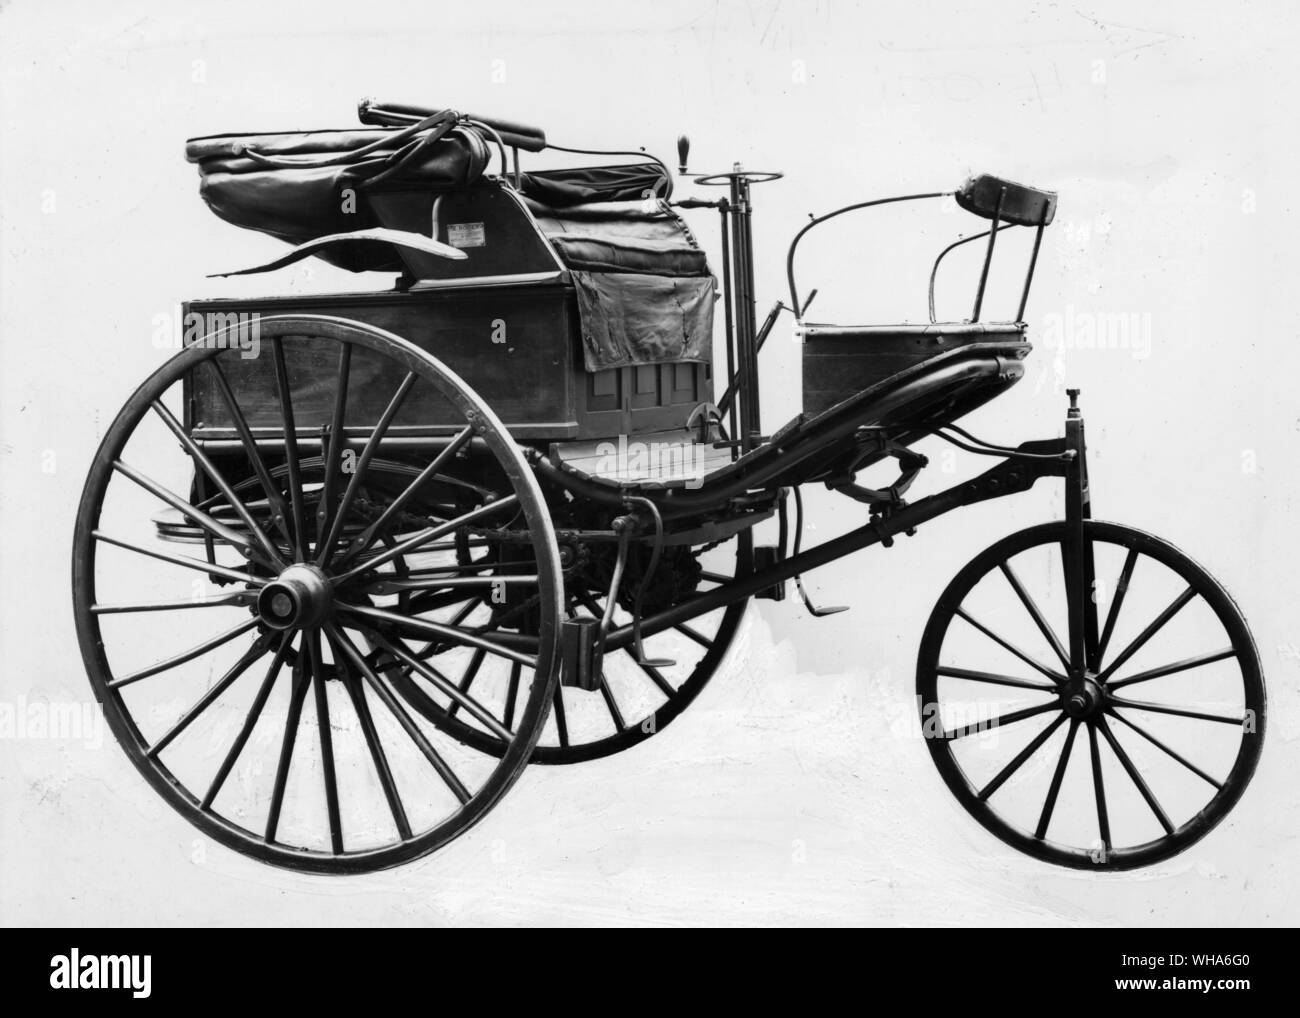 Benz Motor Car 1888. Un véhicule à trois roues avec un moteur monocylindre horizontal conçu par Carl Benz. Cet exemple est sans doute la première voiture à essence mis en Angleterre Banque D'Images